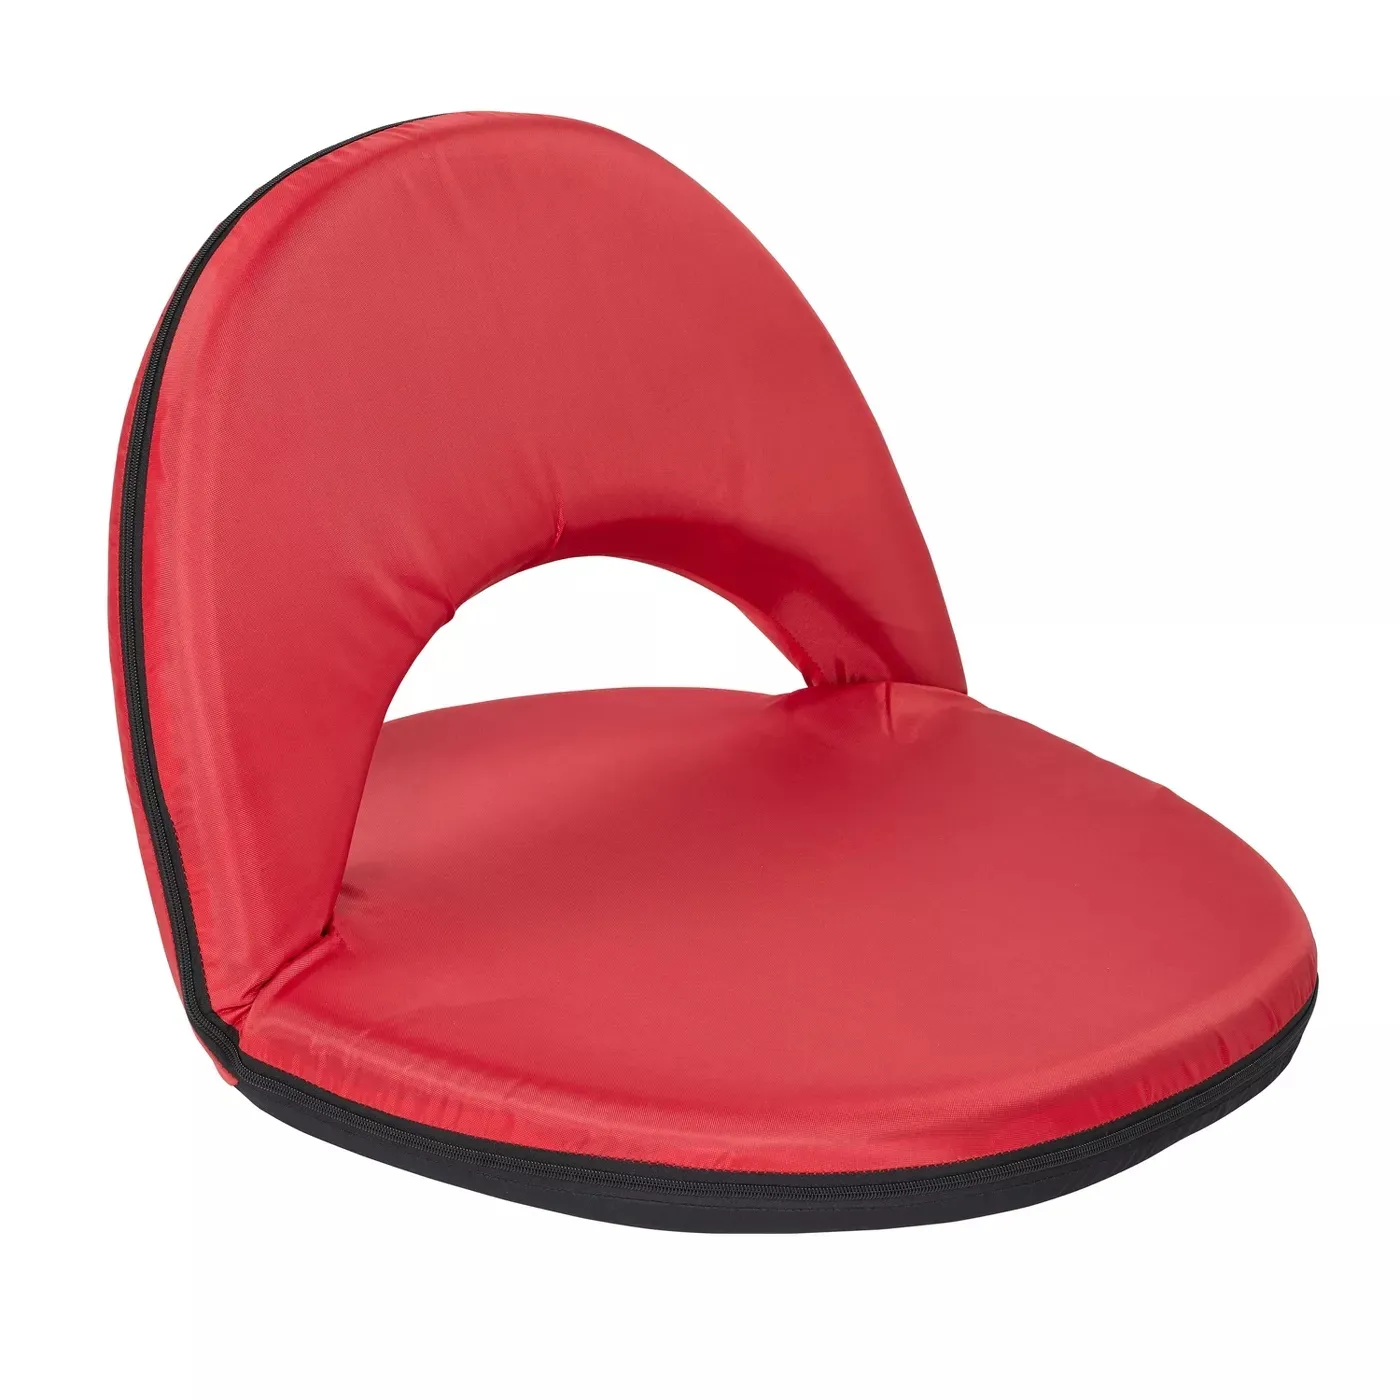 Foldable Meditation Japanese Style Cushion Floor Chair Adjustable Lazy Washable Non Slip Folding Floor Chair